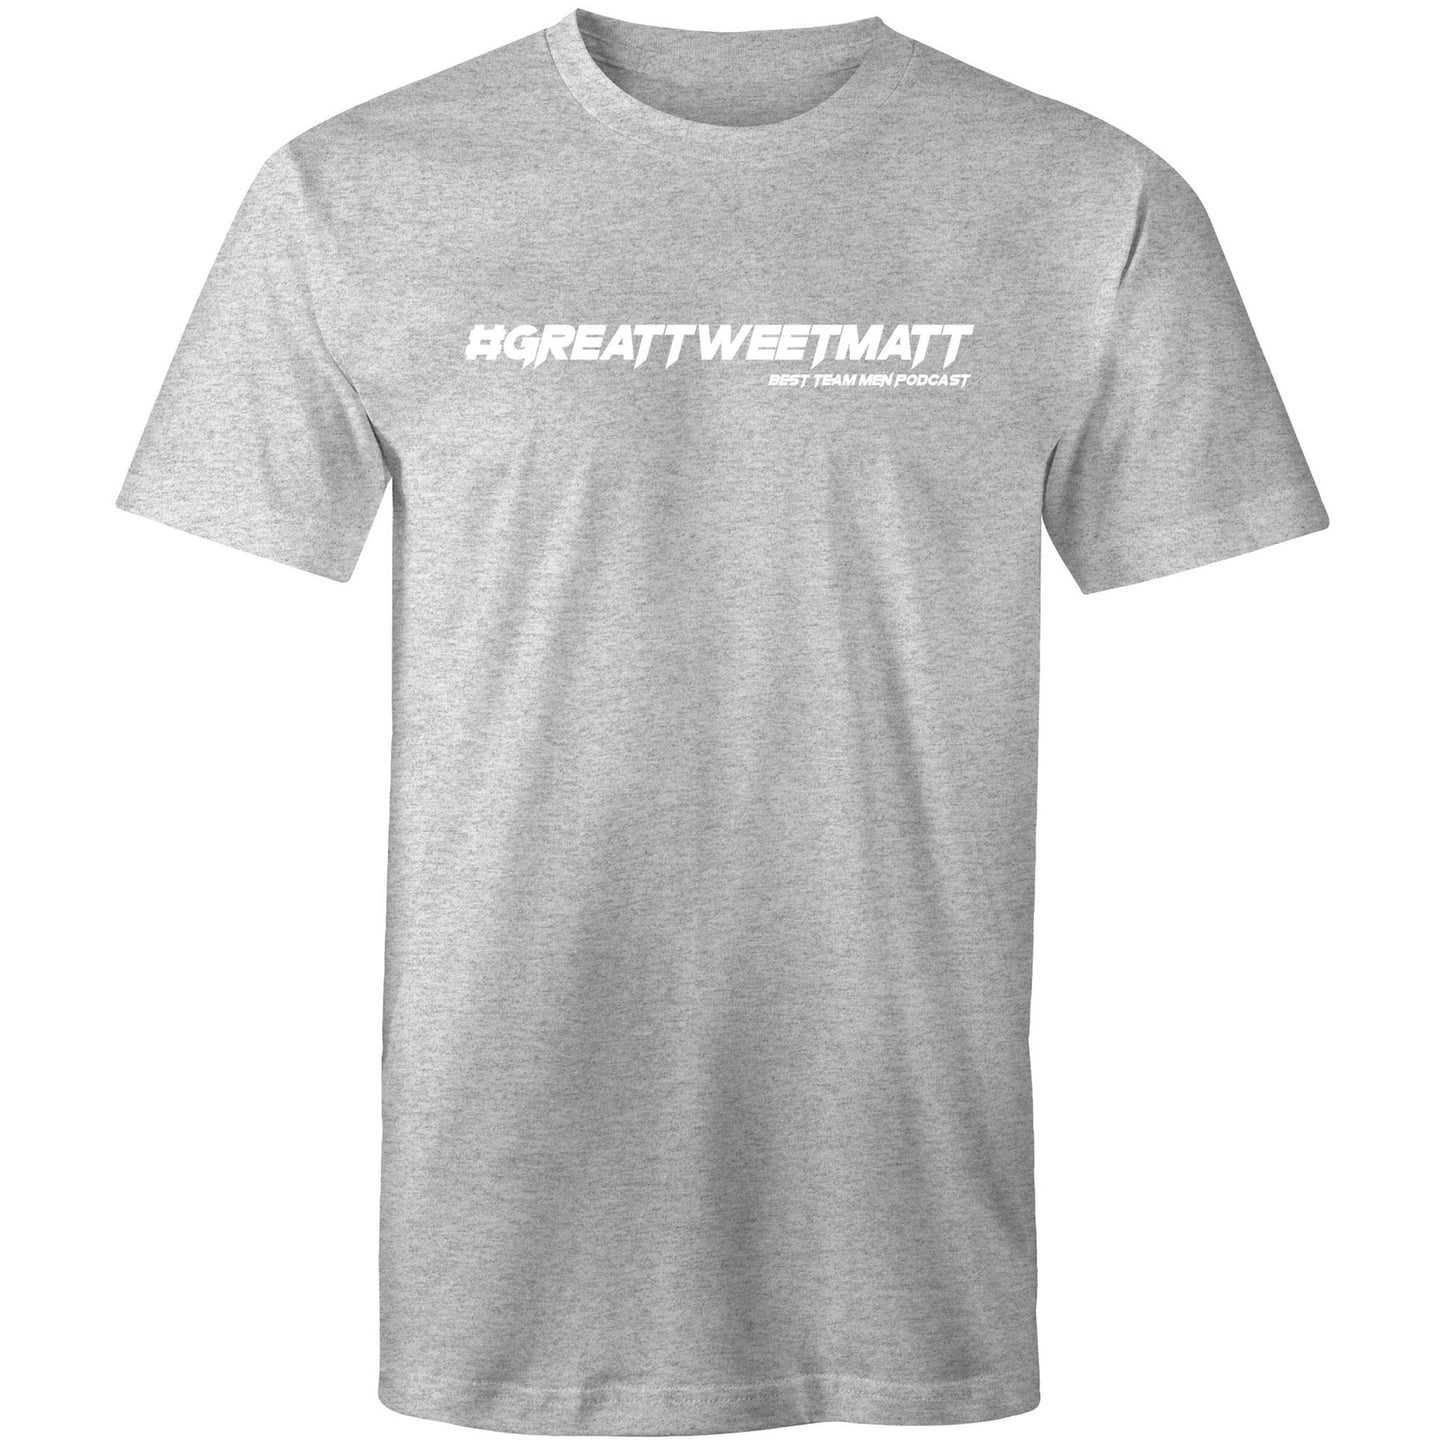 'Great Tweet Matt' Best Team Men (White font) AS Colour Staple - Mens T-Shirt